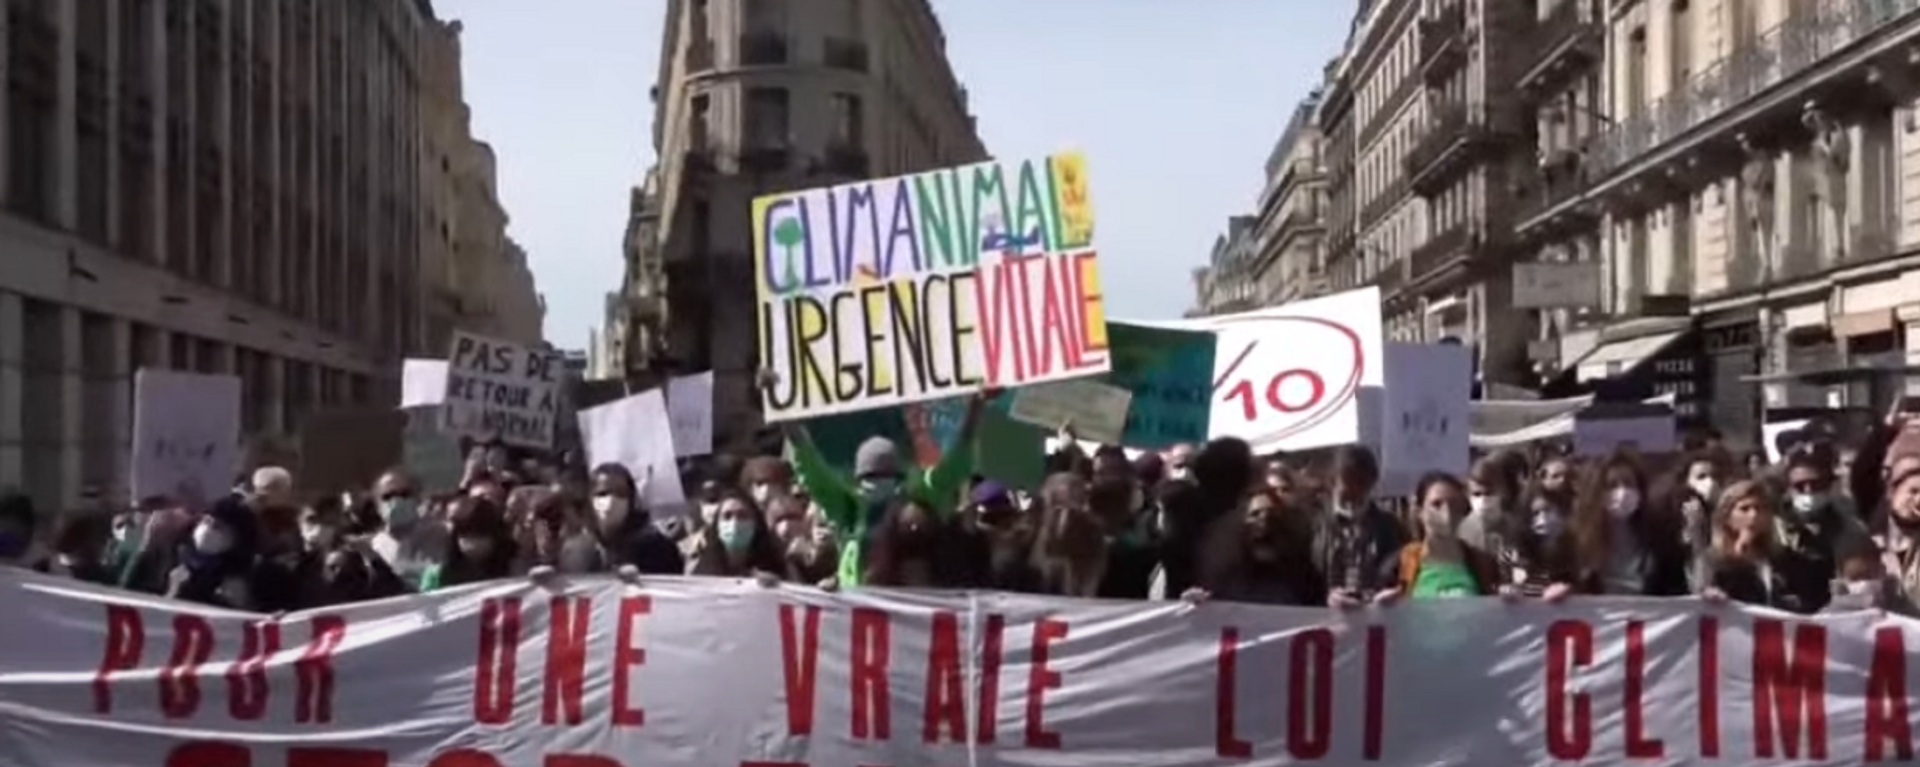 Manifestaciones en París para exigir una ley climática sostenible - Sputnik Mundo, 1920, 28.03.2021